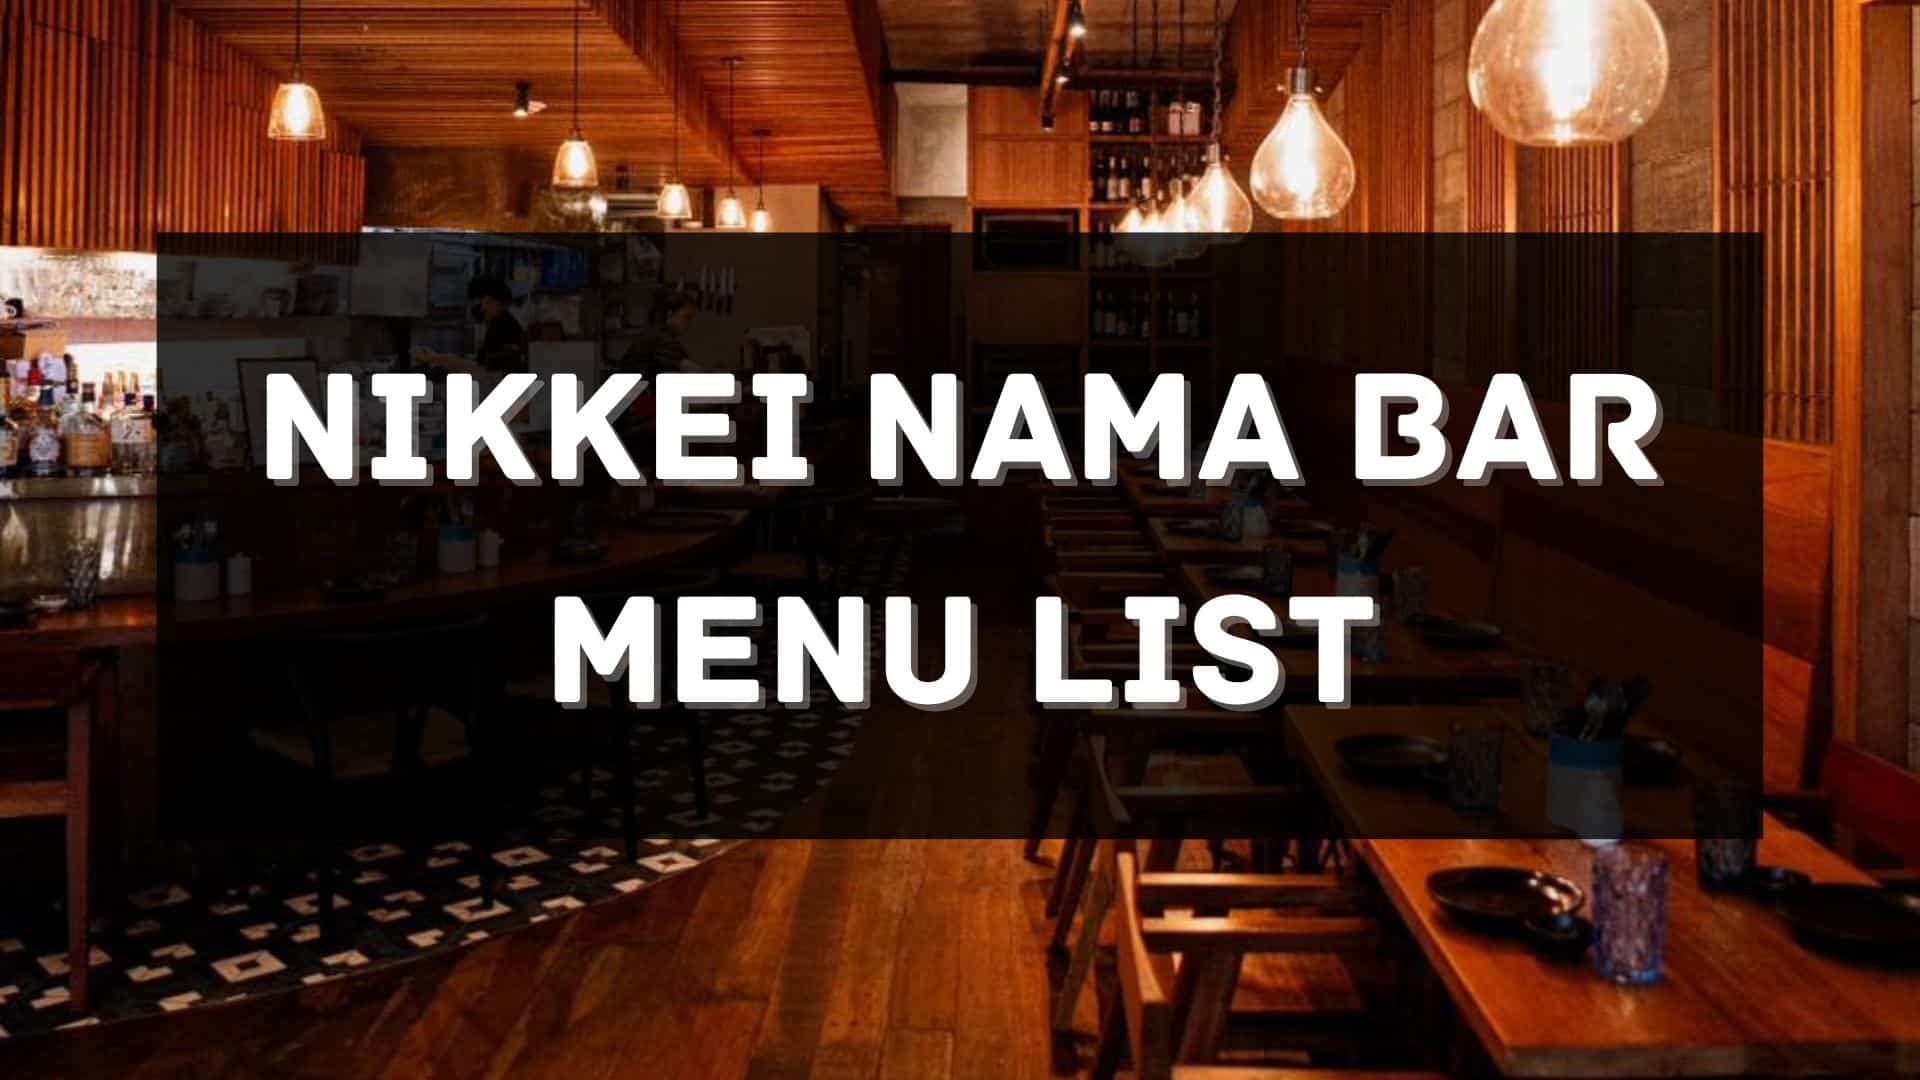 nikkei nama bar menu prices philippines